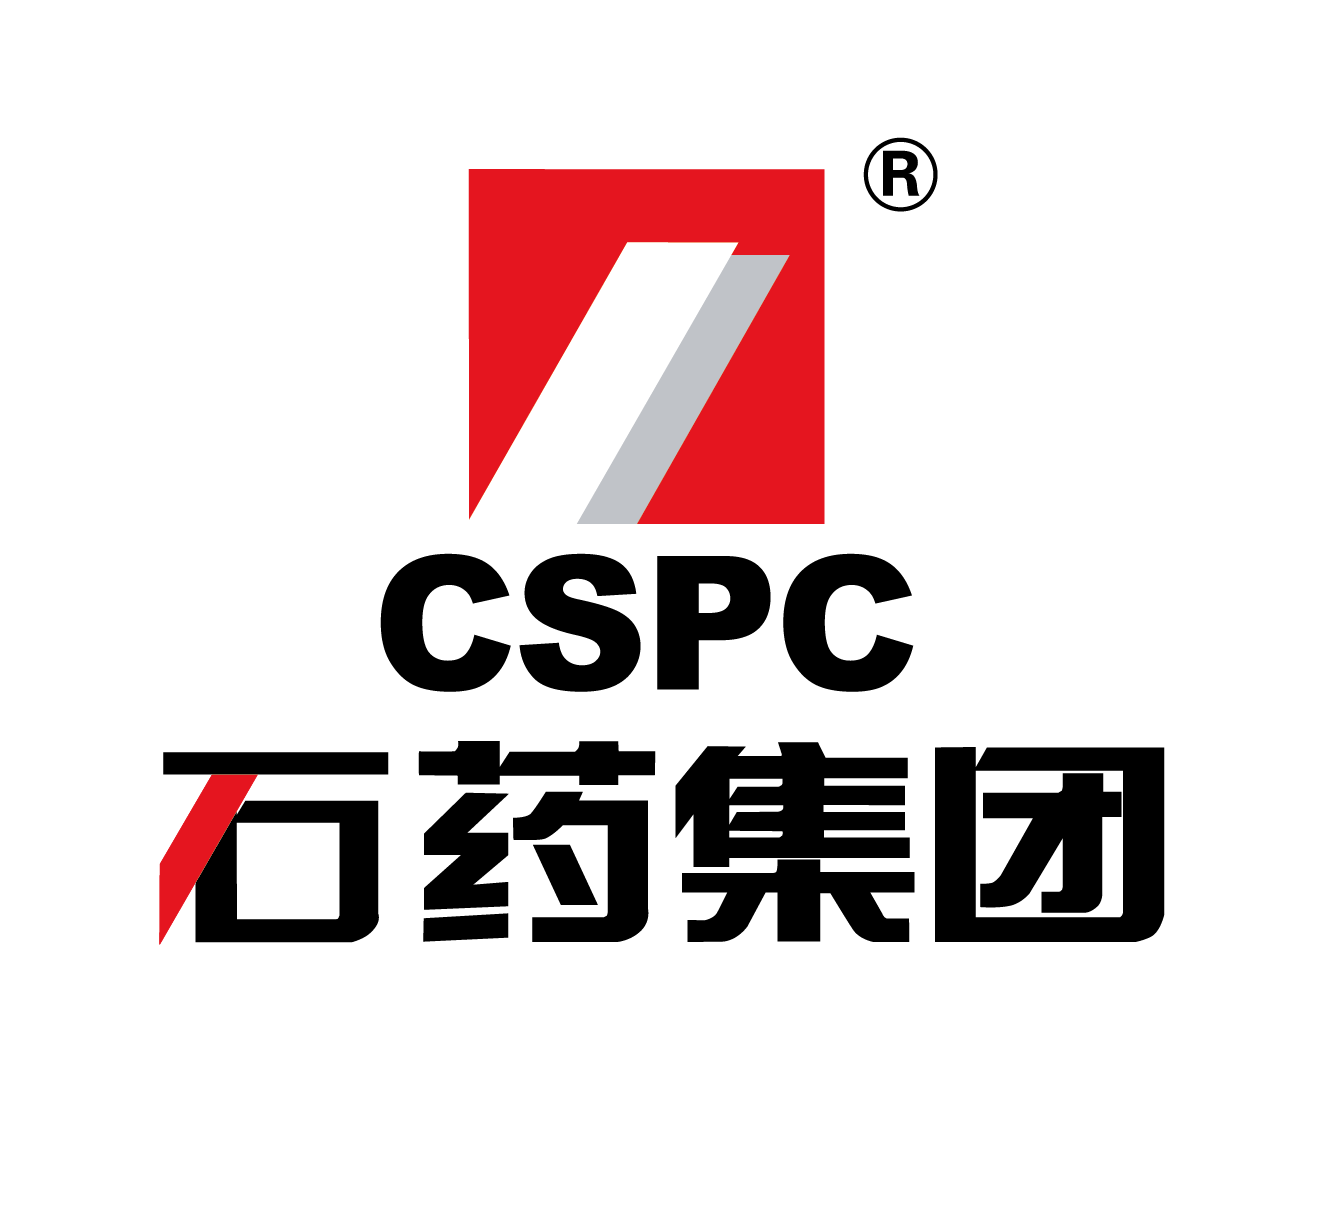 石药集团logo图片